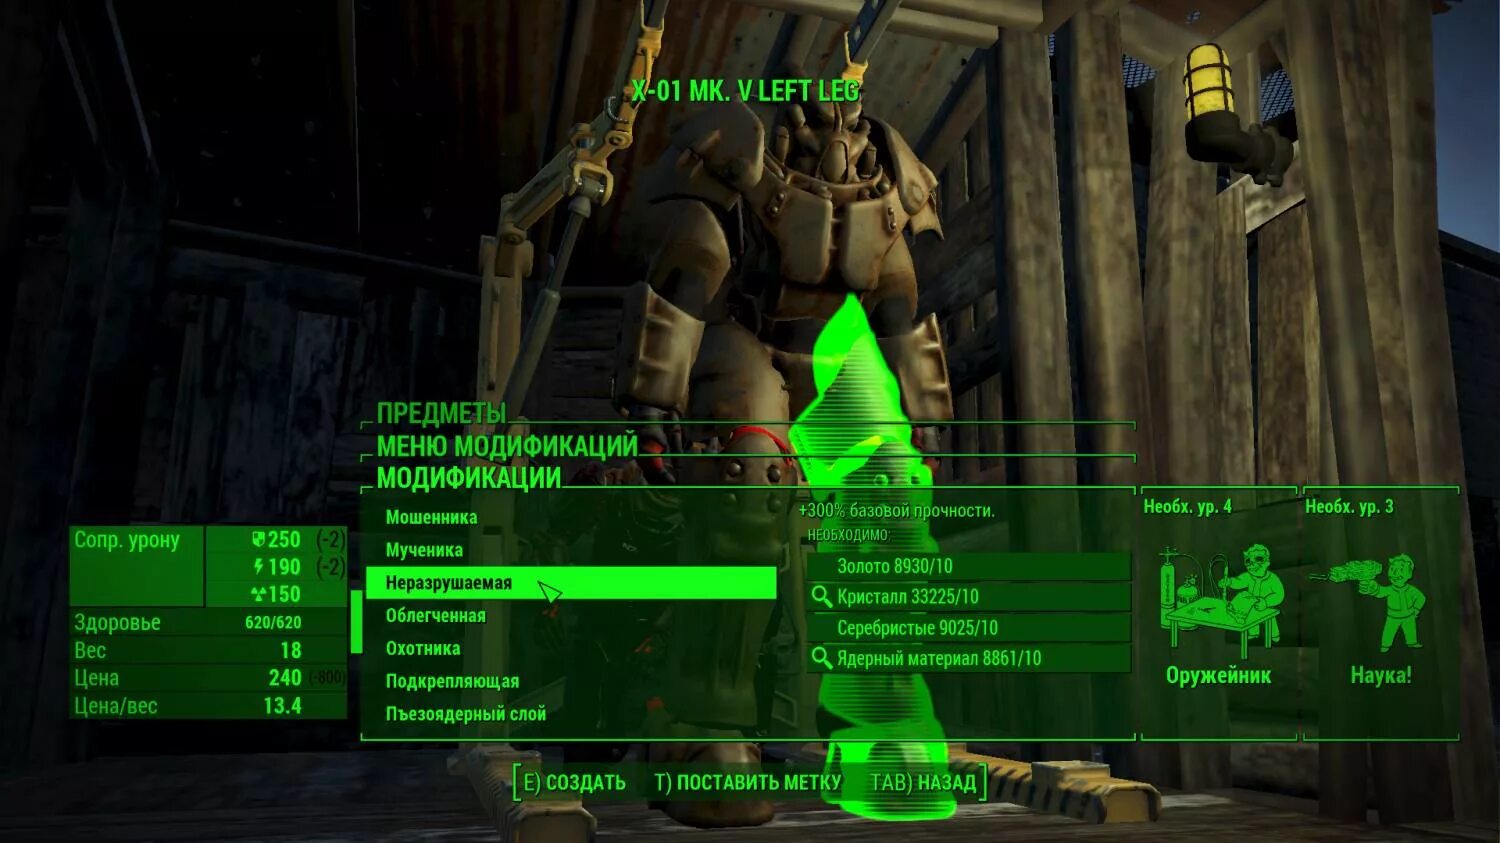 Как переводится fallout. Fallout 4 - 1.10.163.0. Fallout 4 характеристики. Имя в Fallout. Fallout группировки.